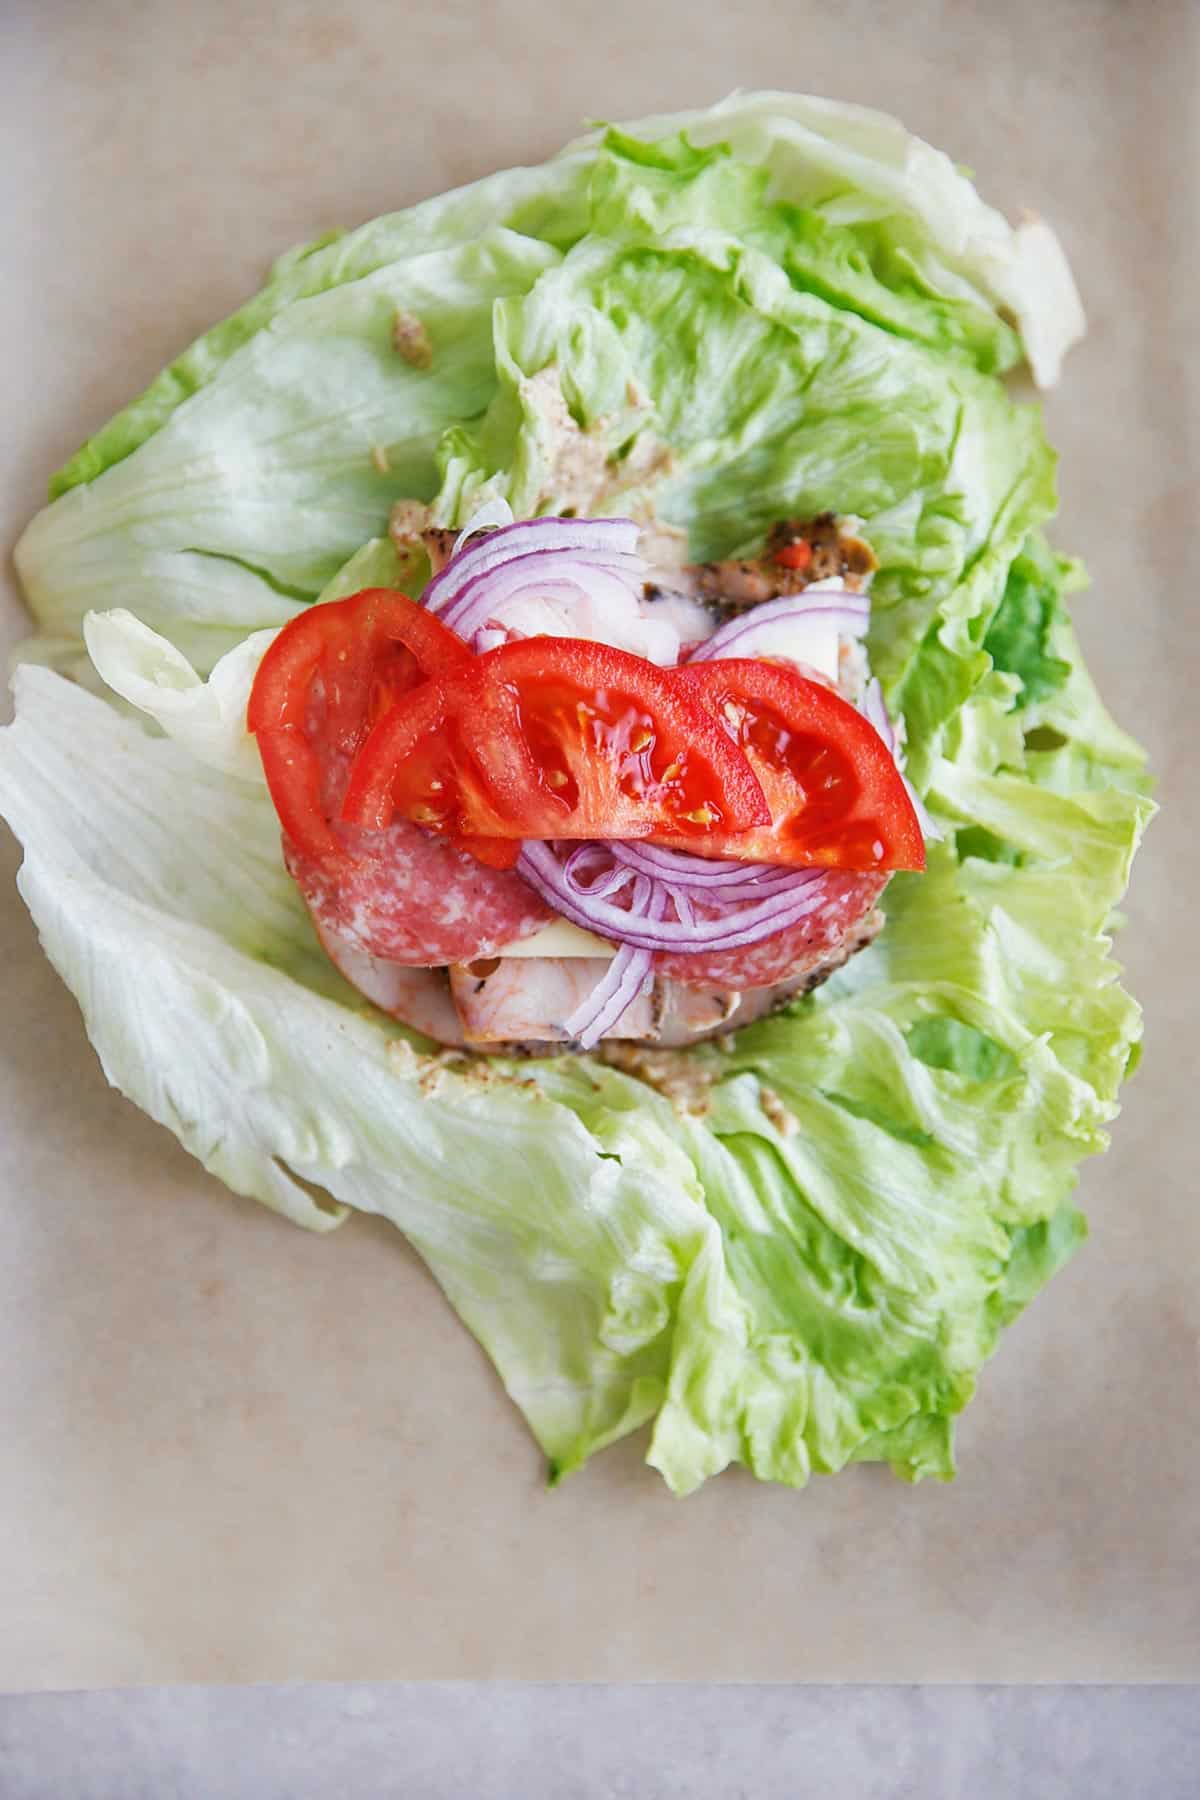 Lettuce sandwich wraps